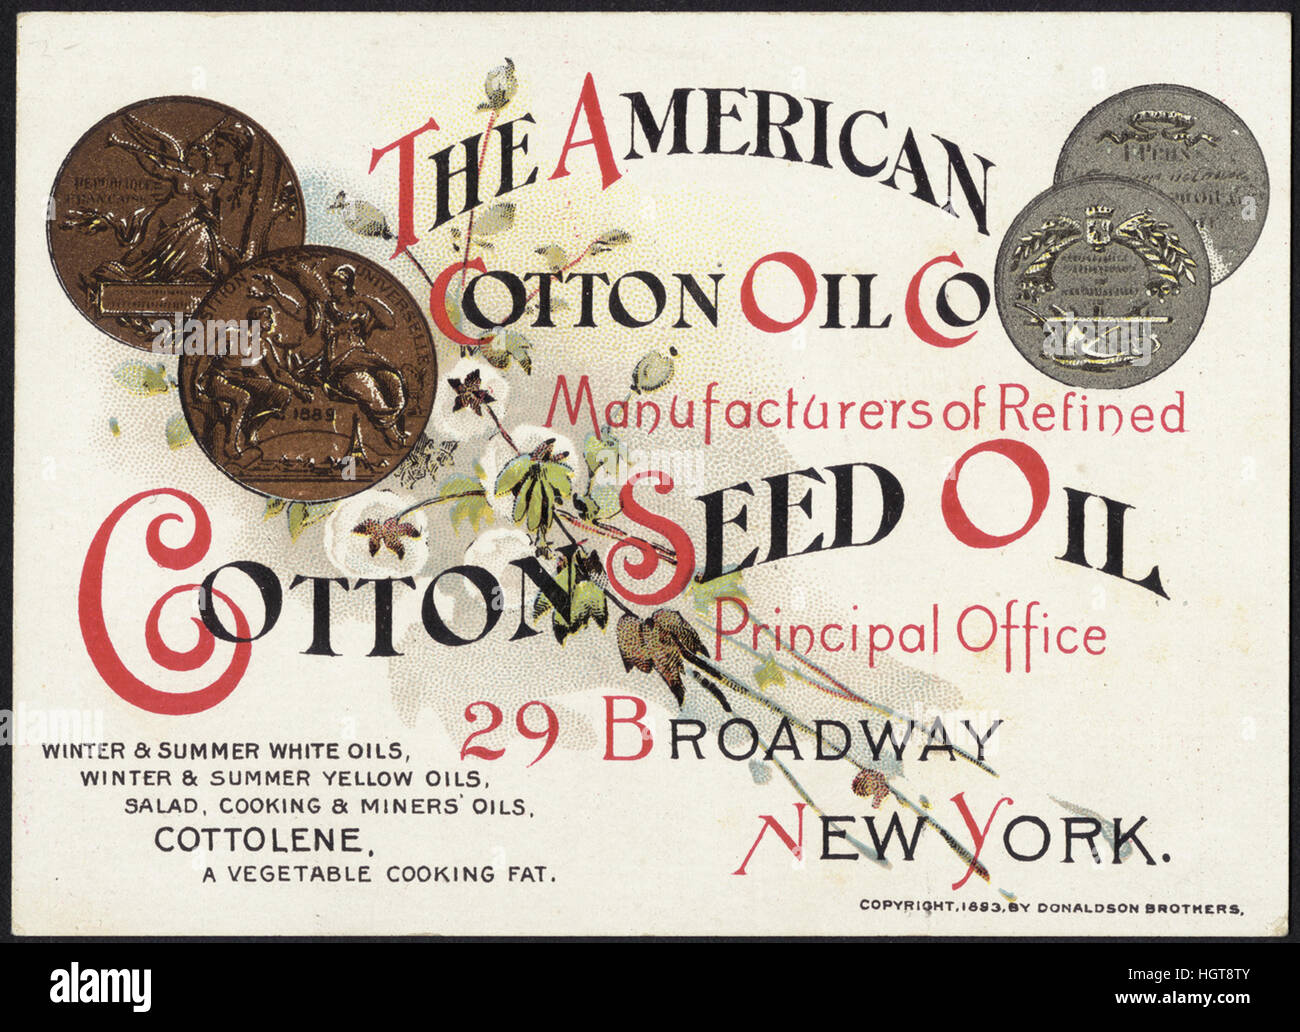 L'huile de coton américains Co, les fabricants d'huile de graines de coton raffinée [avant] - Carte du commerce alimentaire Banque D'Images